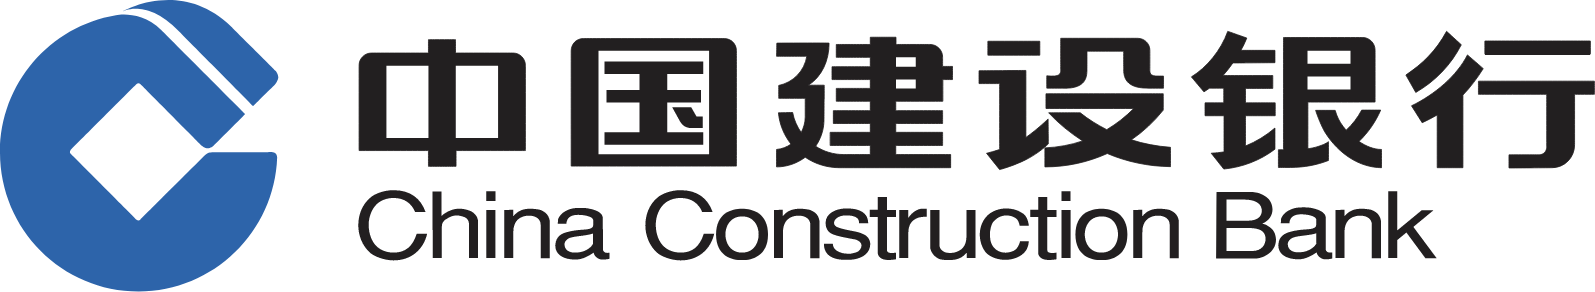 China Construction Bank logo large (transparent PNG)